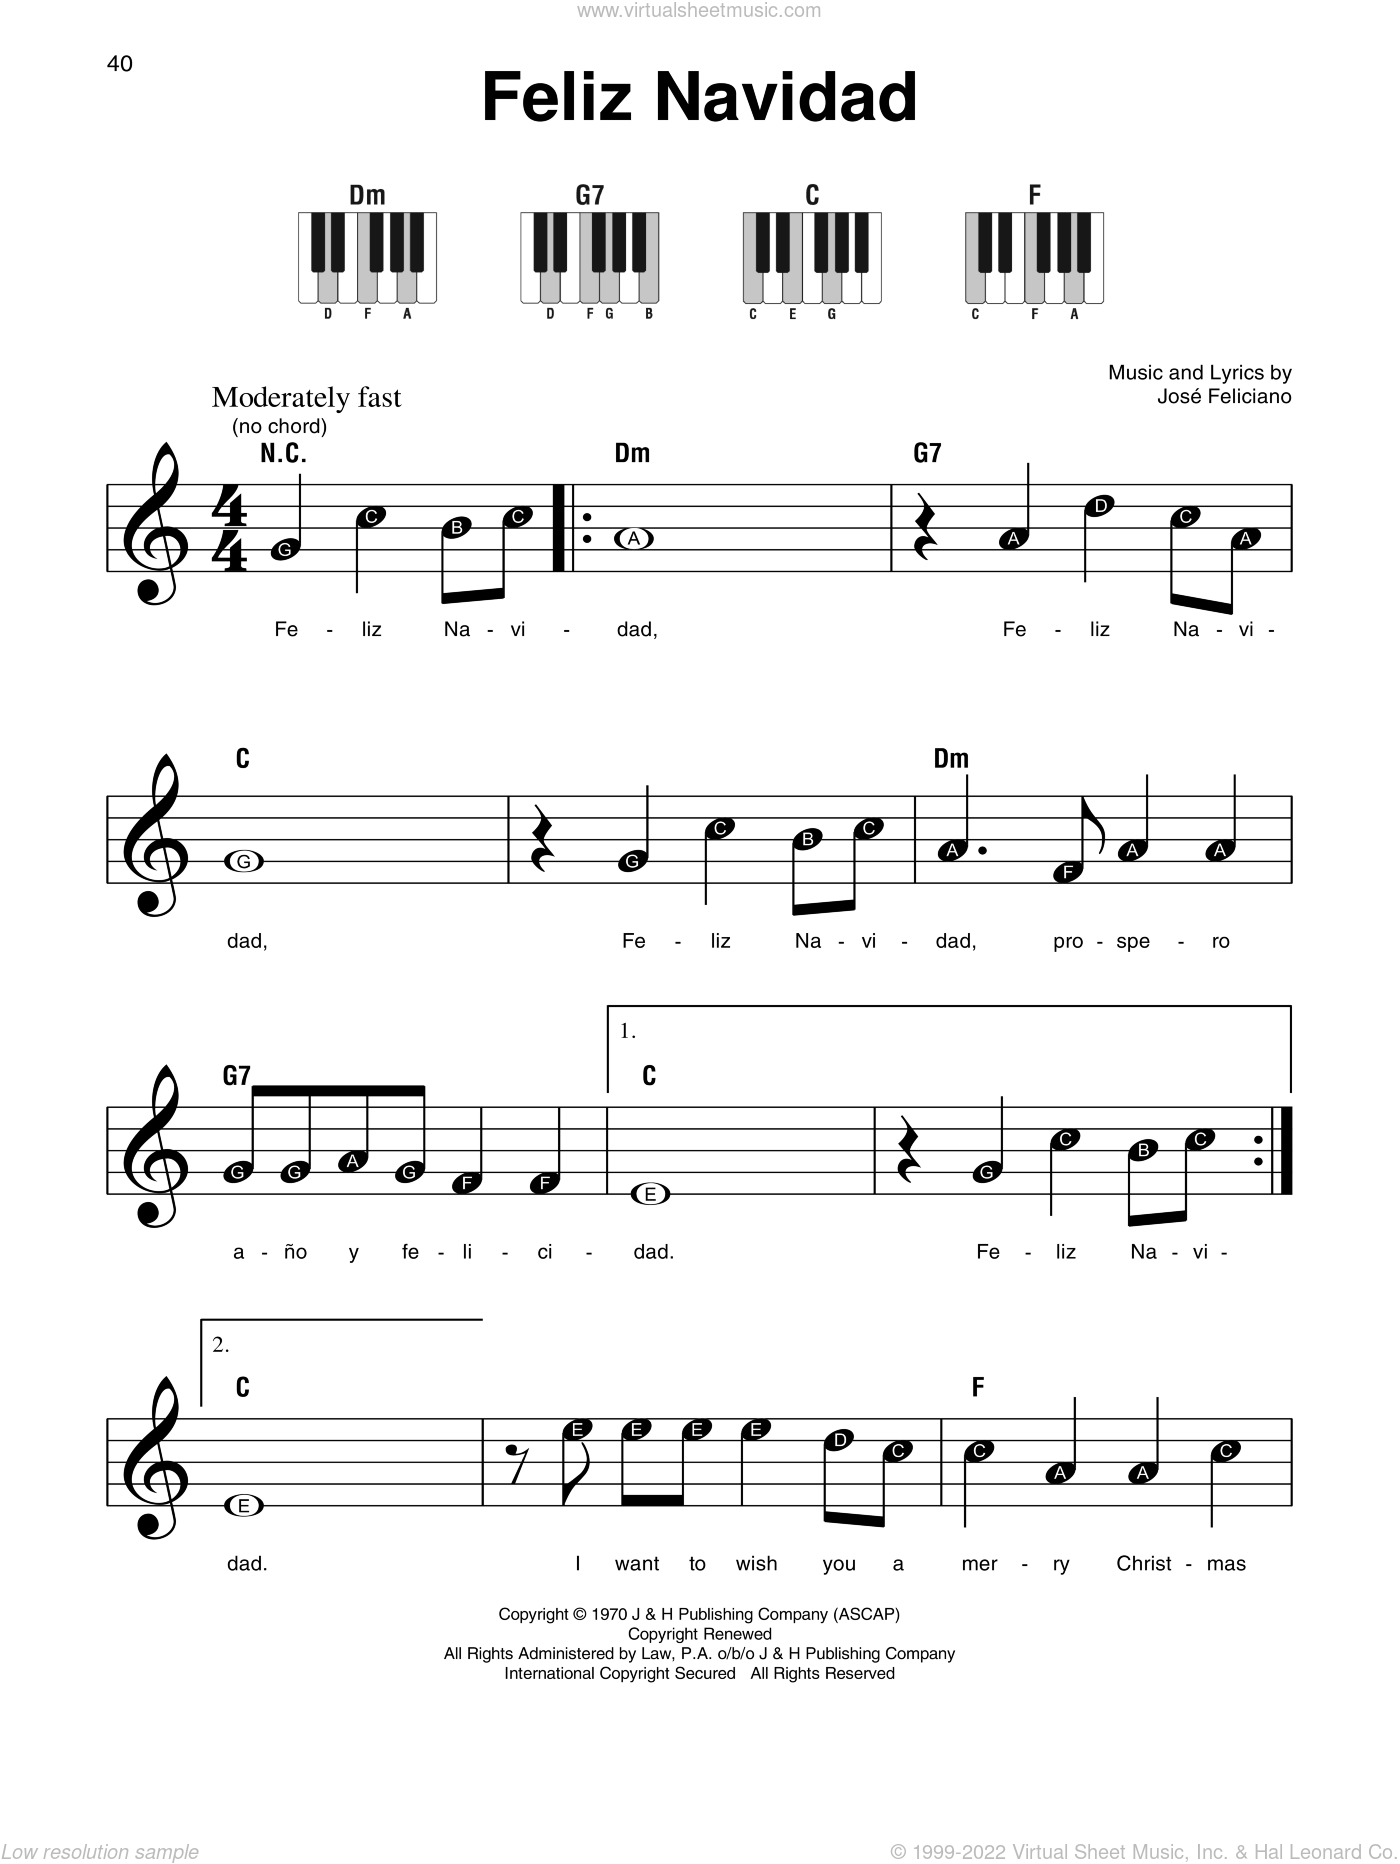 Feliciano Feliz Navidad Sheet Music For Piano Solo V2 - feliz navidad sheet music for piano v2